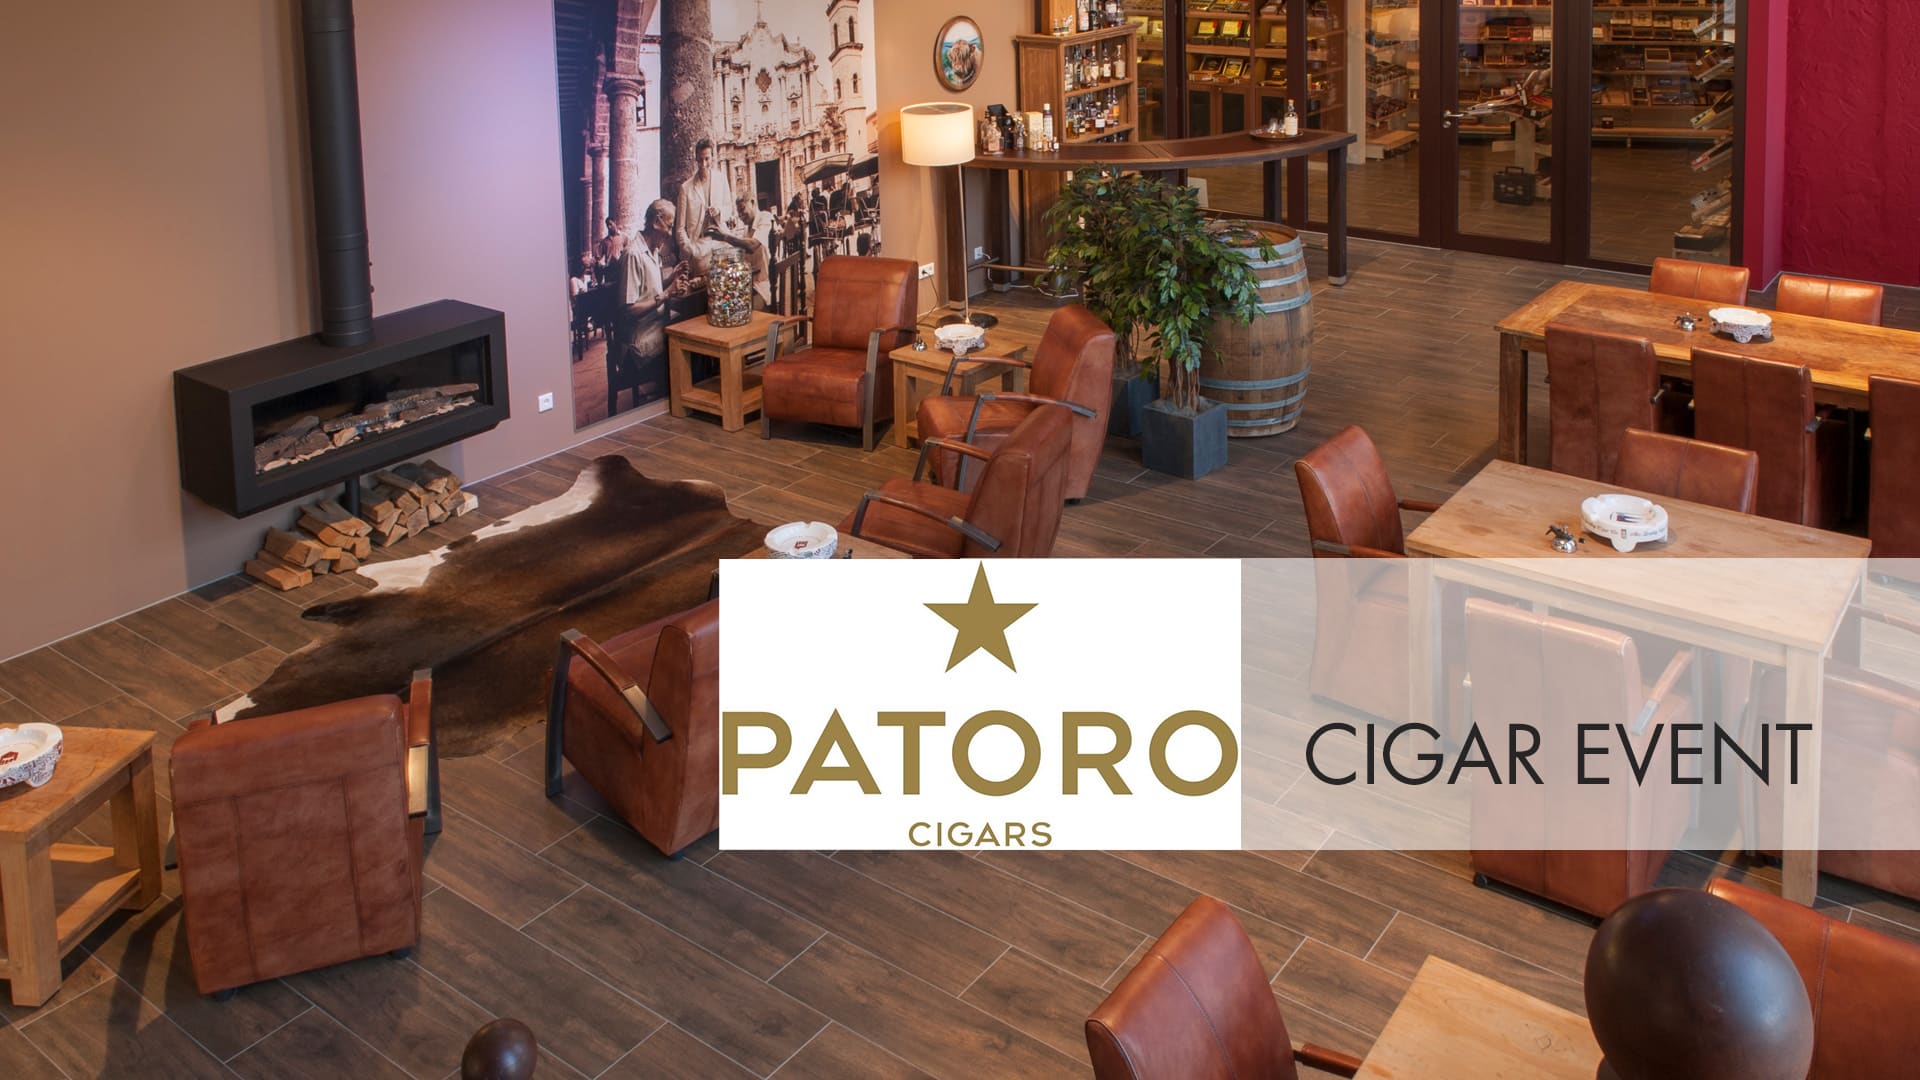 Zigarren-Event mit Patoro Cigars